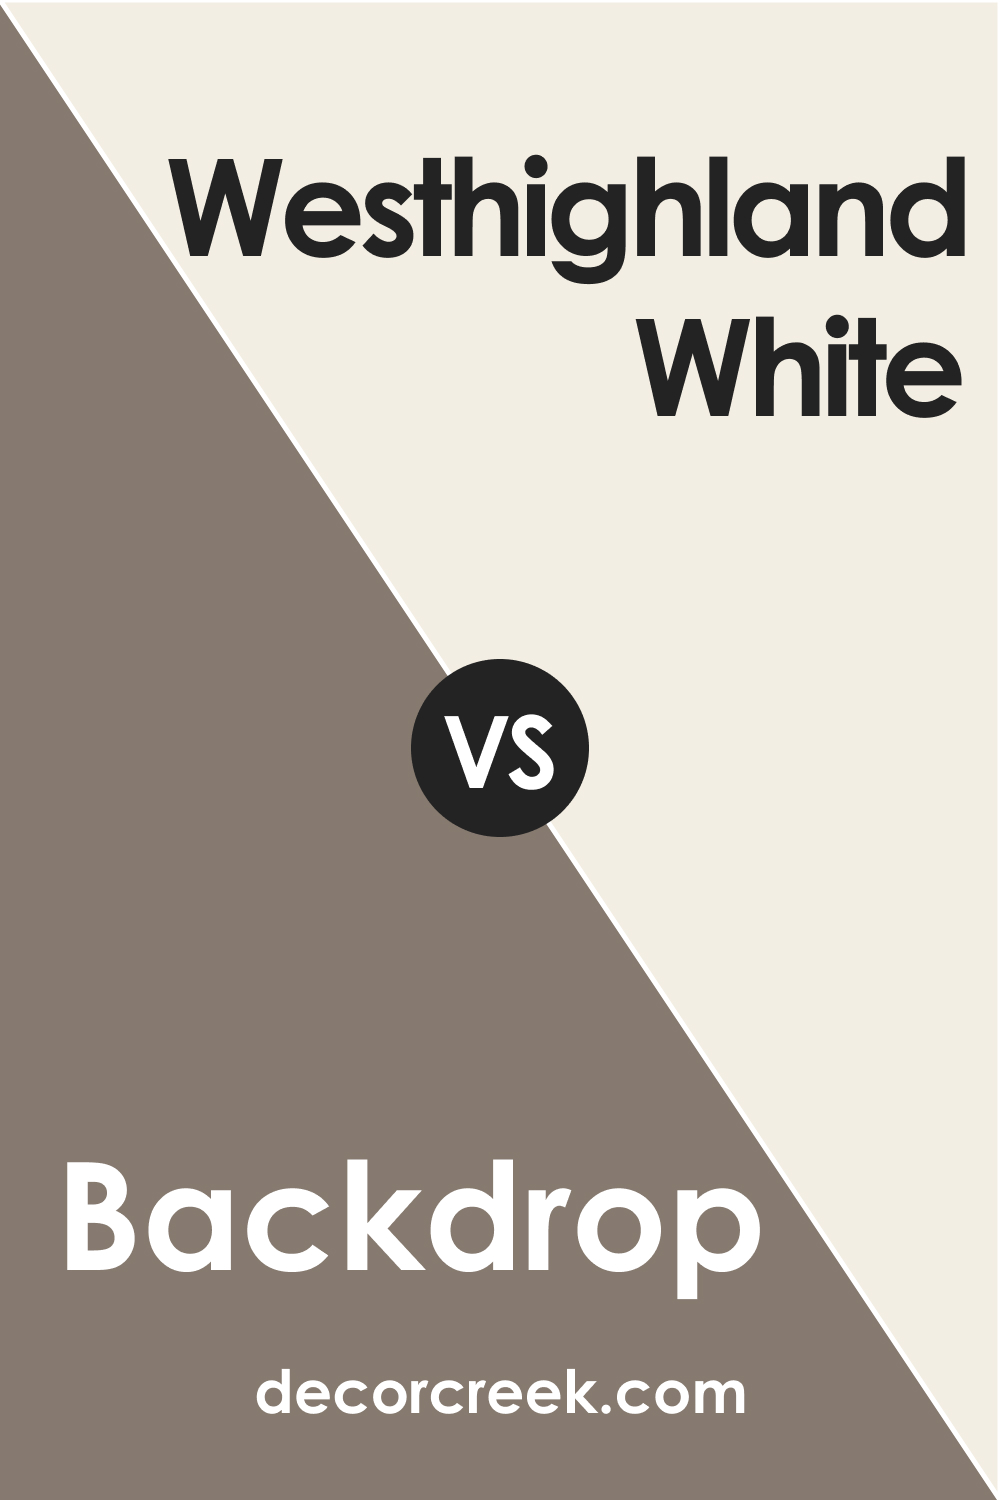 SW 7025 Backdrop vs. SW 7566 Westhighland White